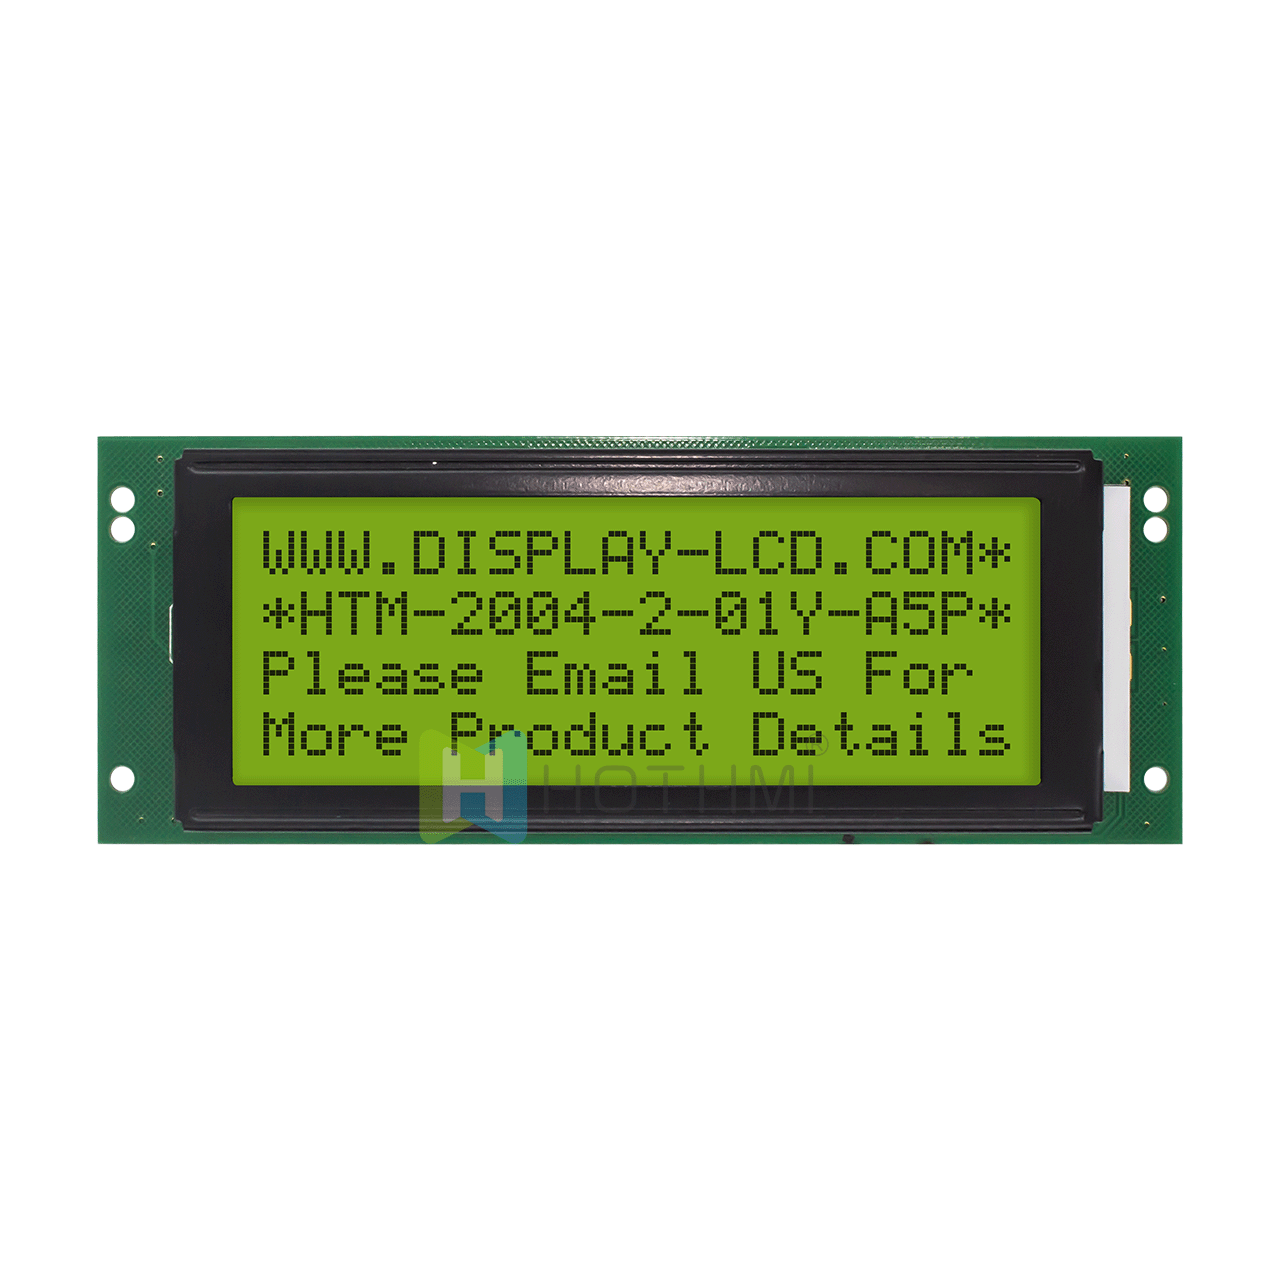 4X20 字符单色液晶模组/ /半透反射/STN+ 黄绿显示屏/带黄绿背光/ Arduino显示屏/ST7066U控制器/5.0V